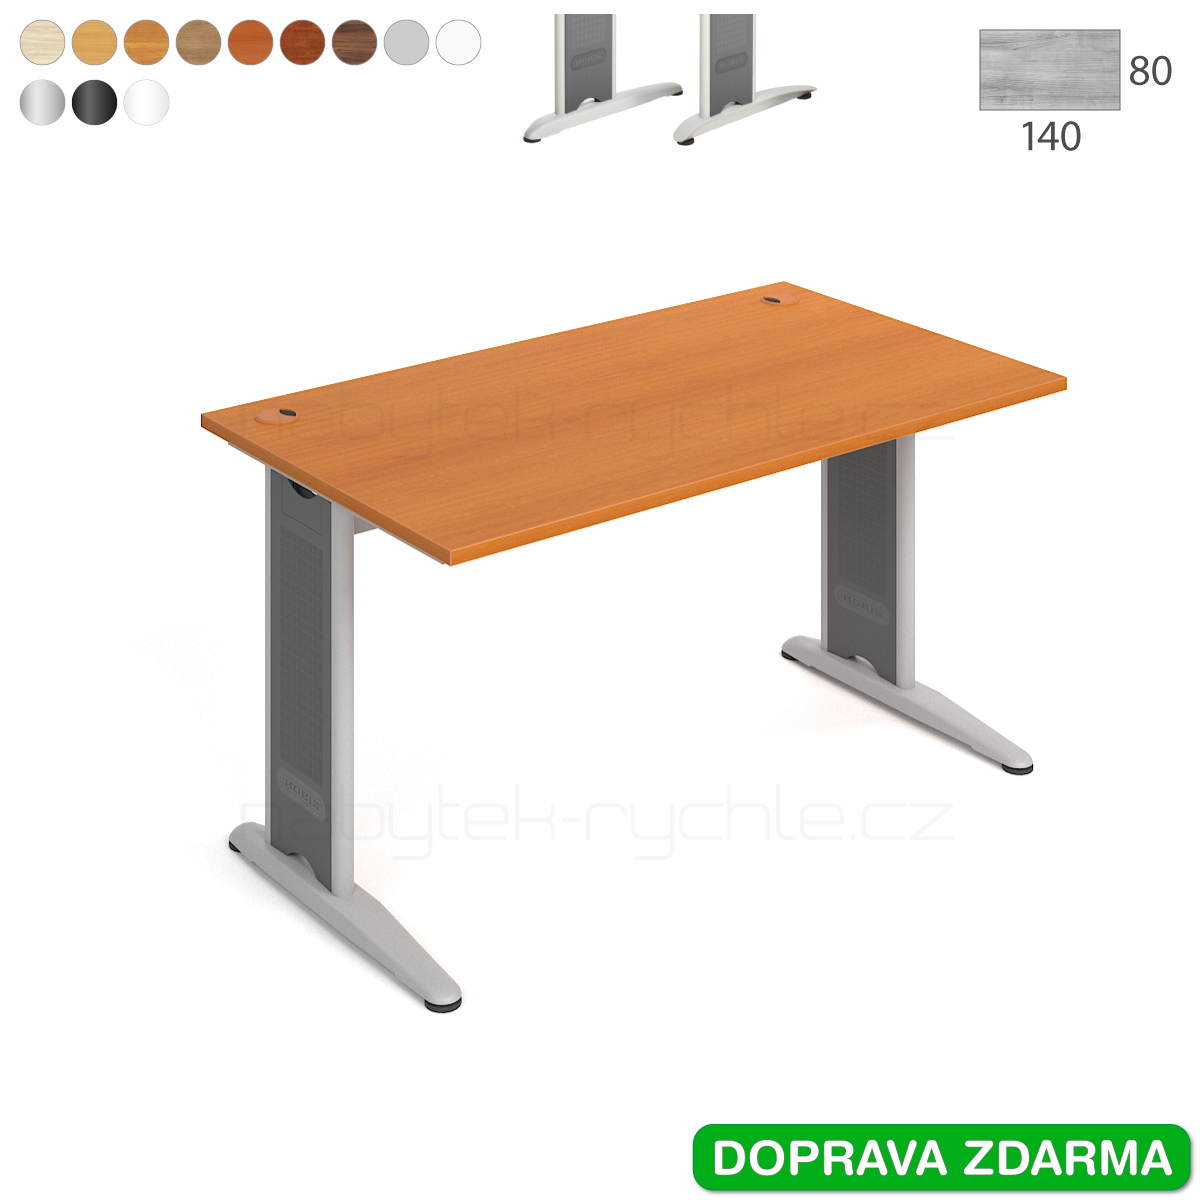 FS 1400 Hobis Flex - Stůl 140 x 80